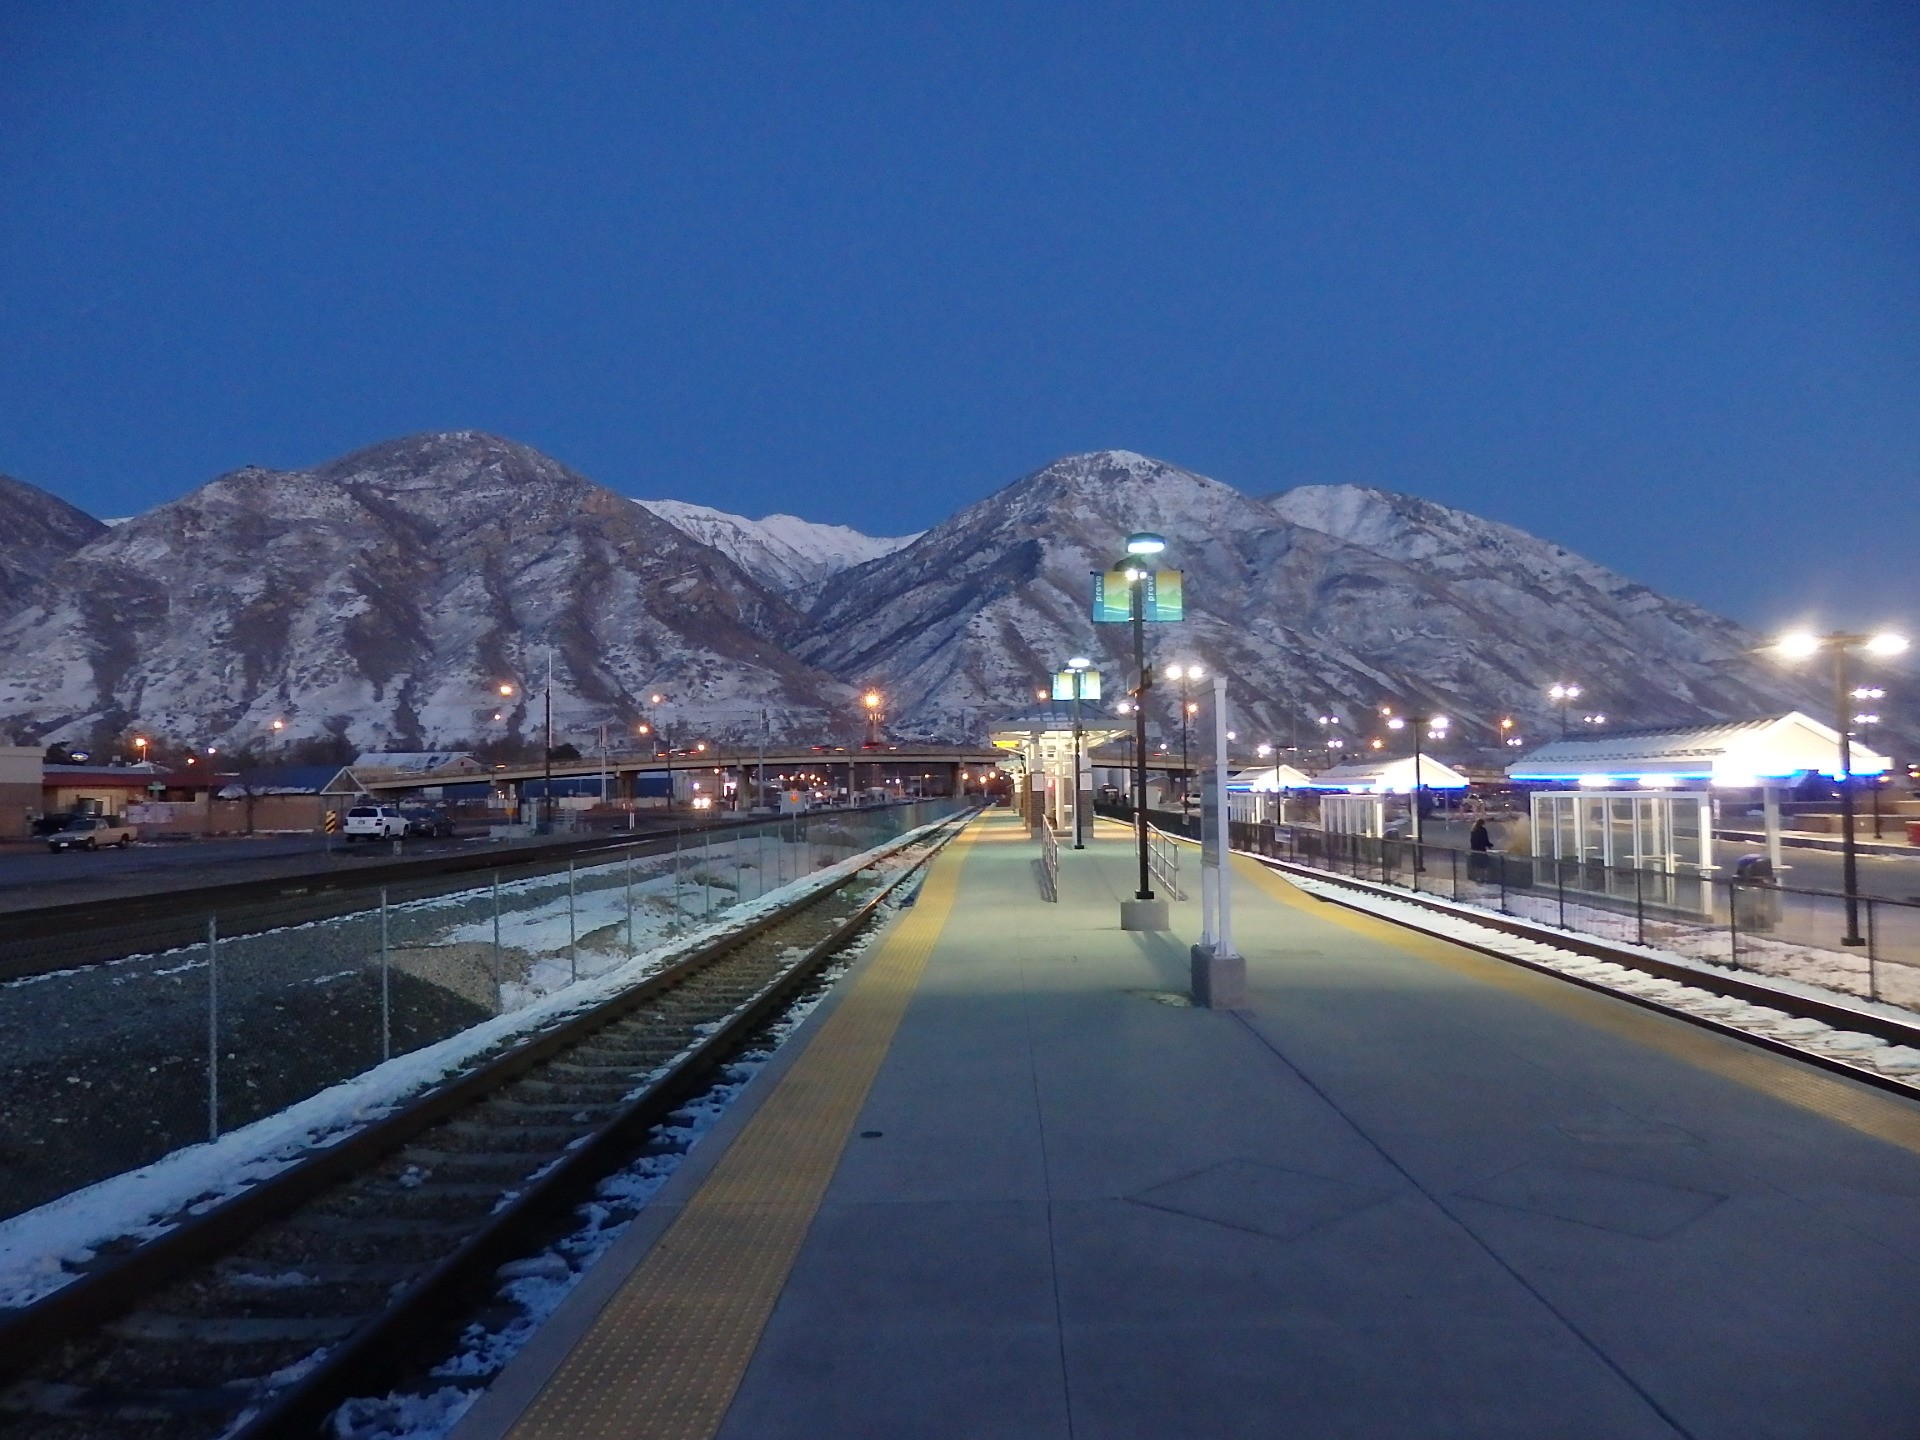 Foto: estación final del FrontRunner - Provo (Utah), Estados Unidos